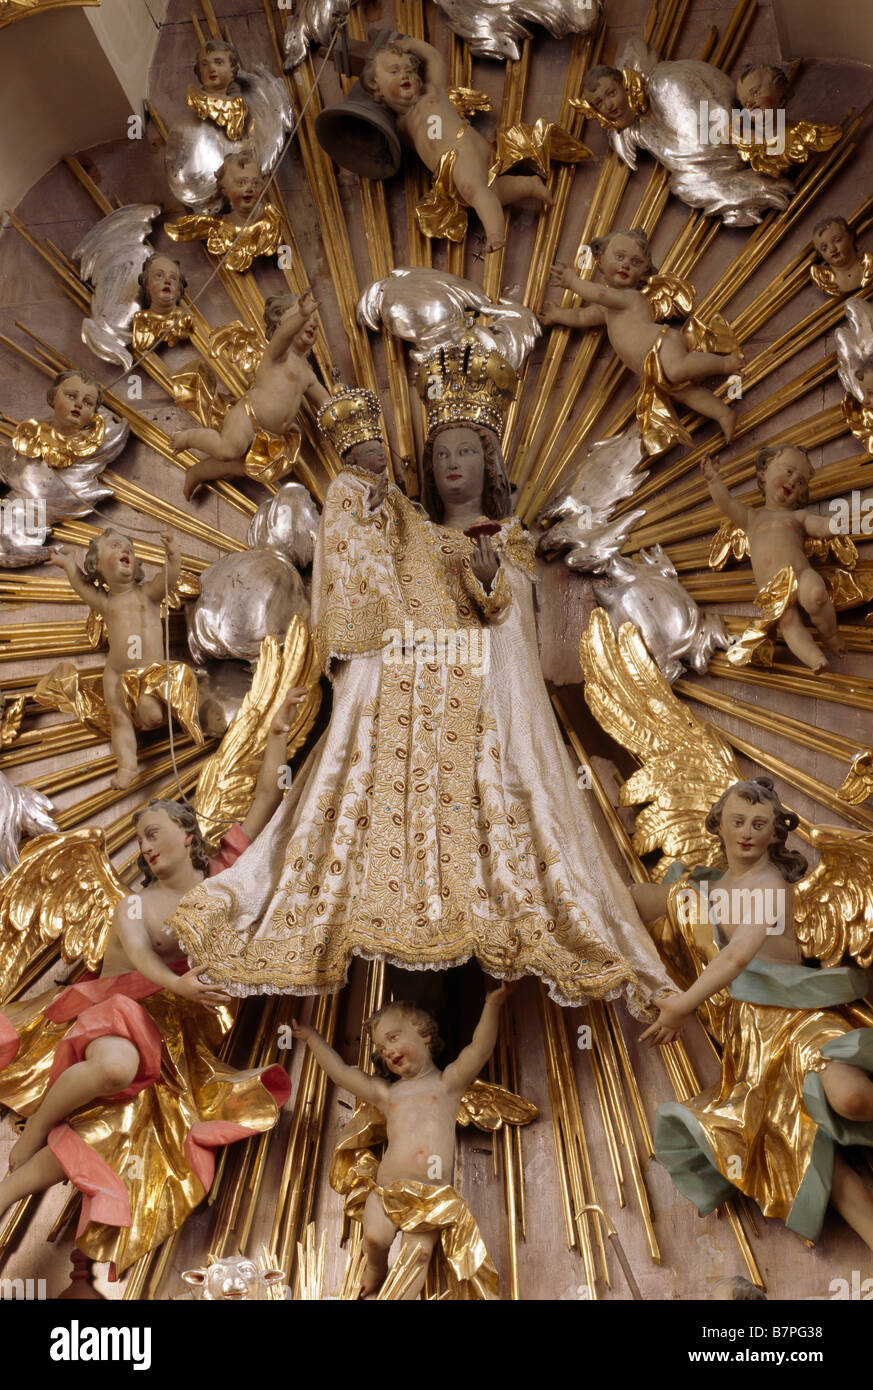 Sossau, Marienwallfahrtskirche, Gnadenbild am Hochaltar, Madonna mit tipo im Festkleid, um 1400 Foto Stock